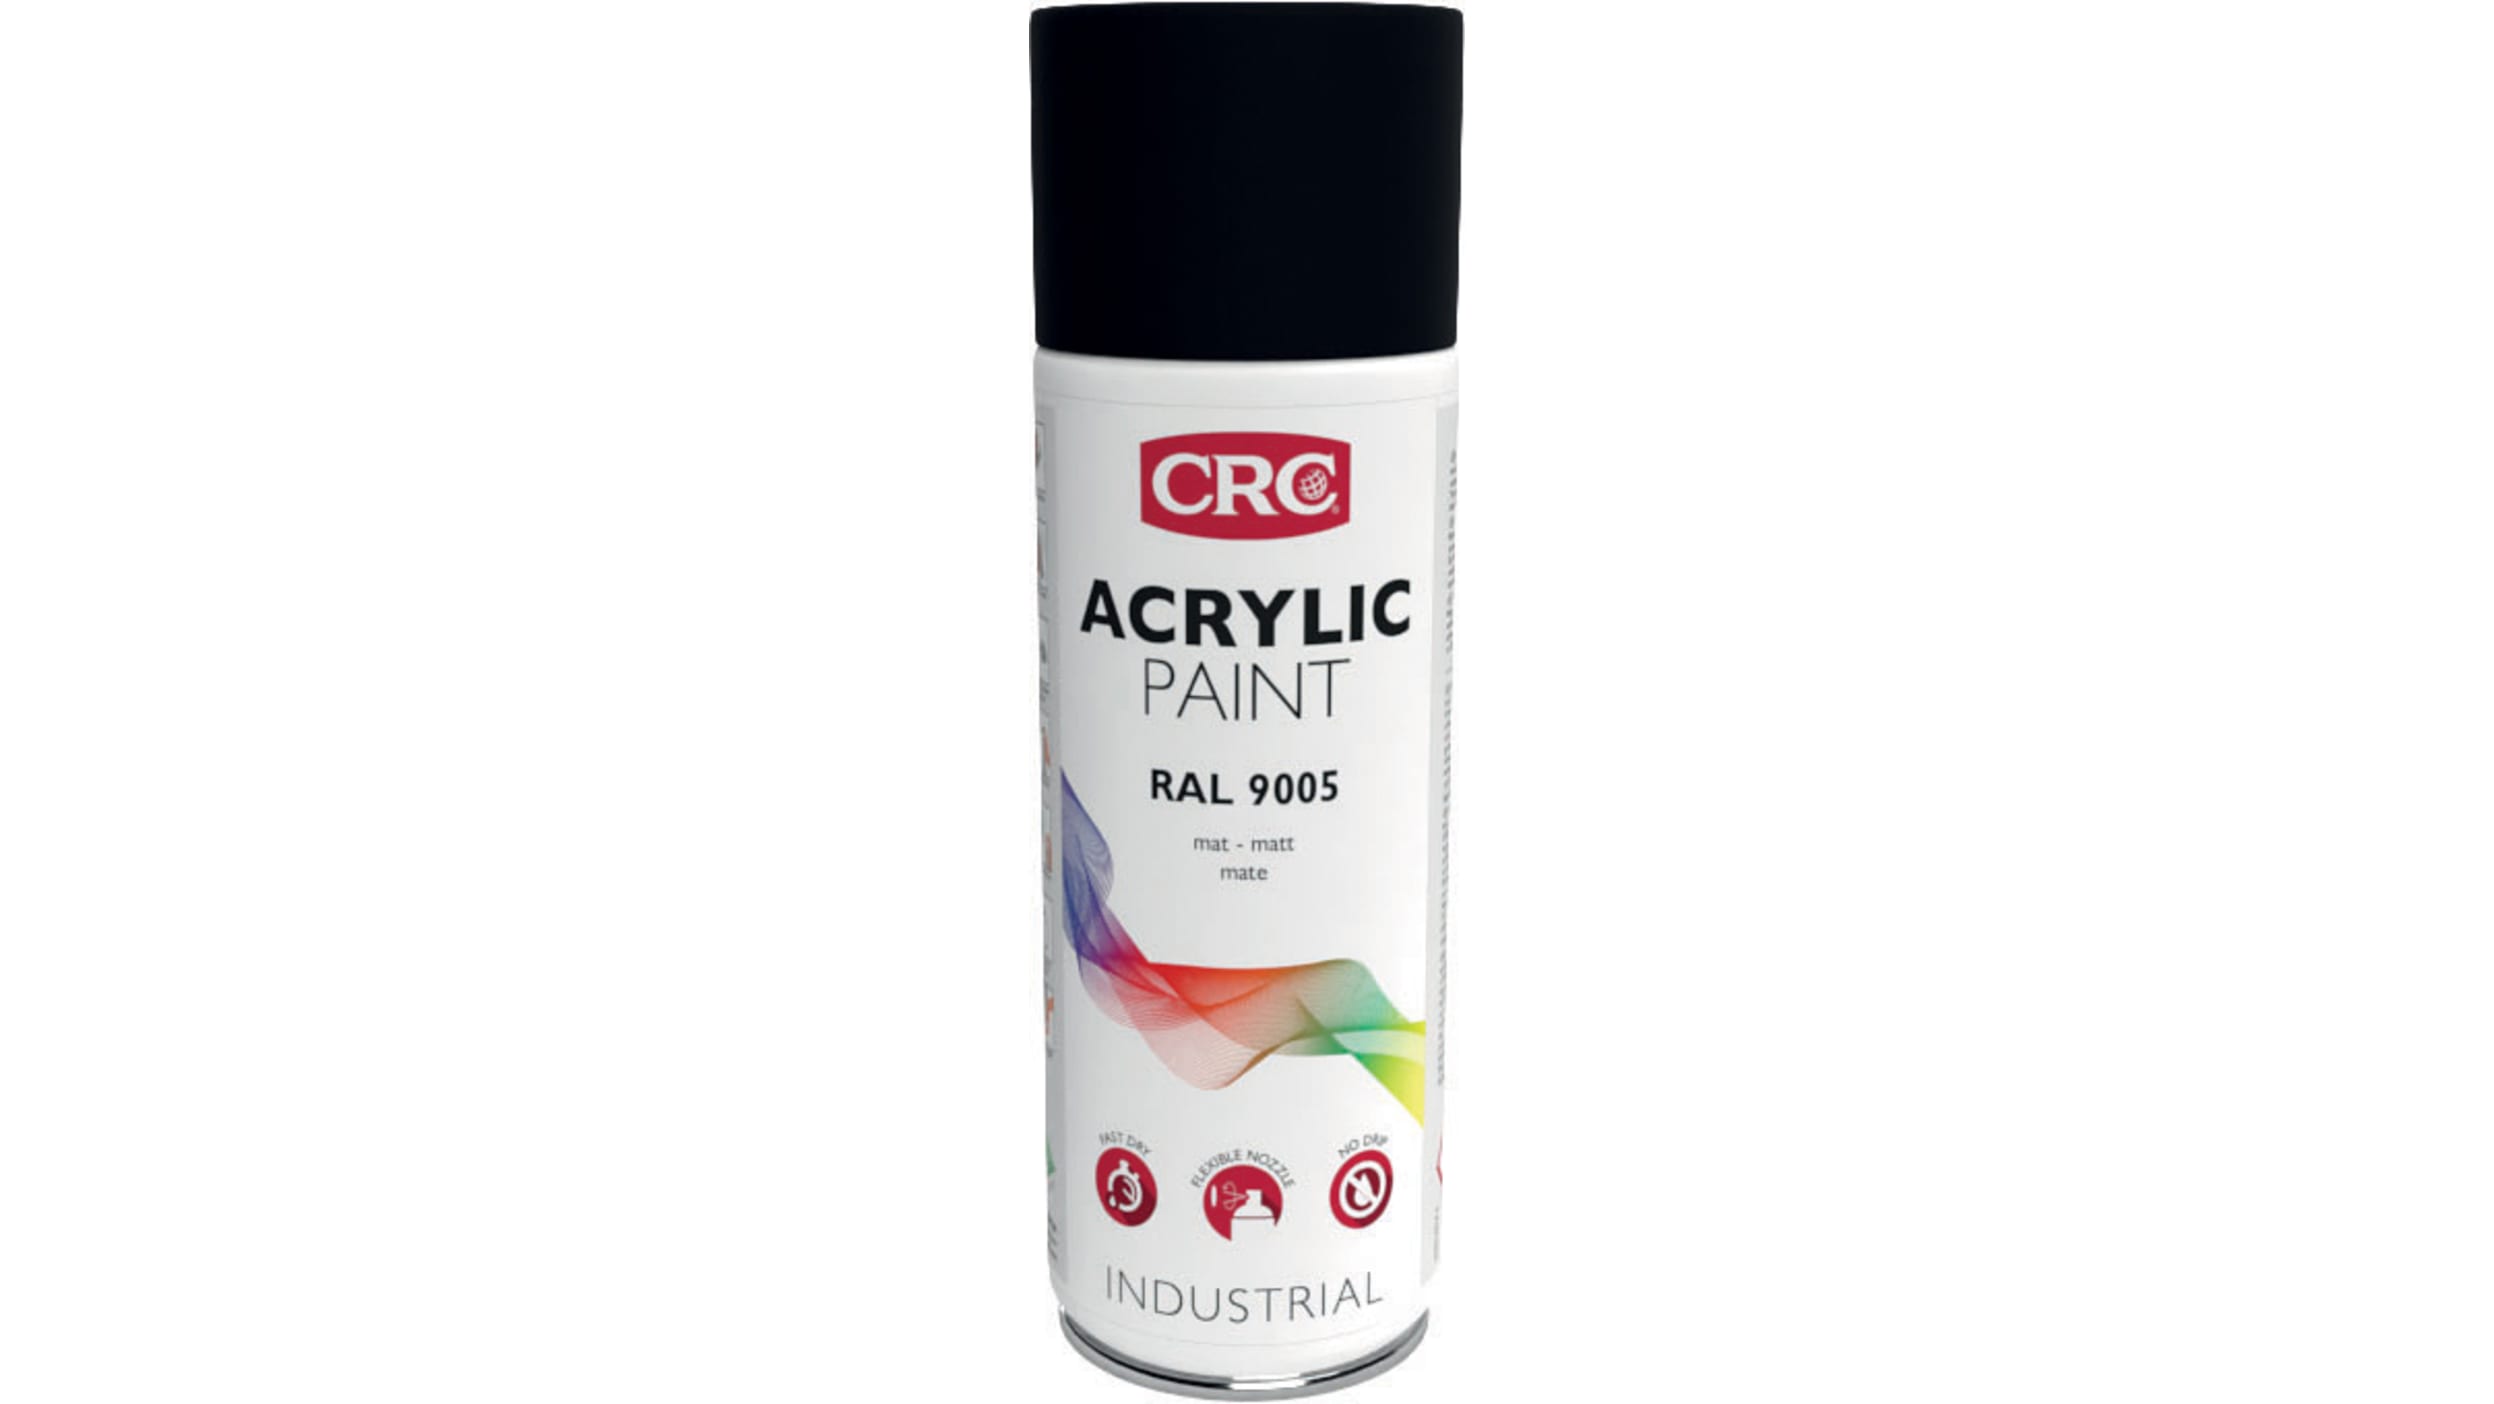 NextAcril - Pintura acrílica en aerosol Brillante con excelente adherencia  en plástico RAL 3017 Rosa ES